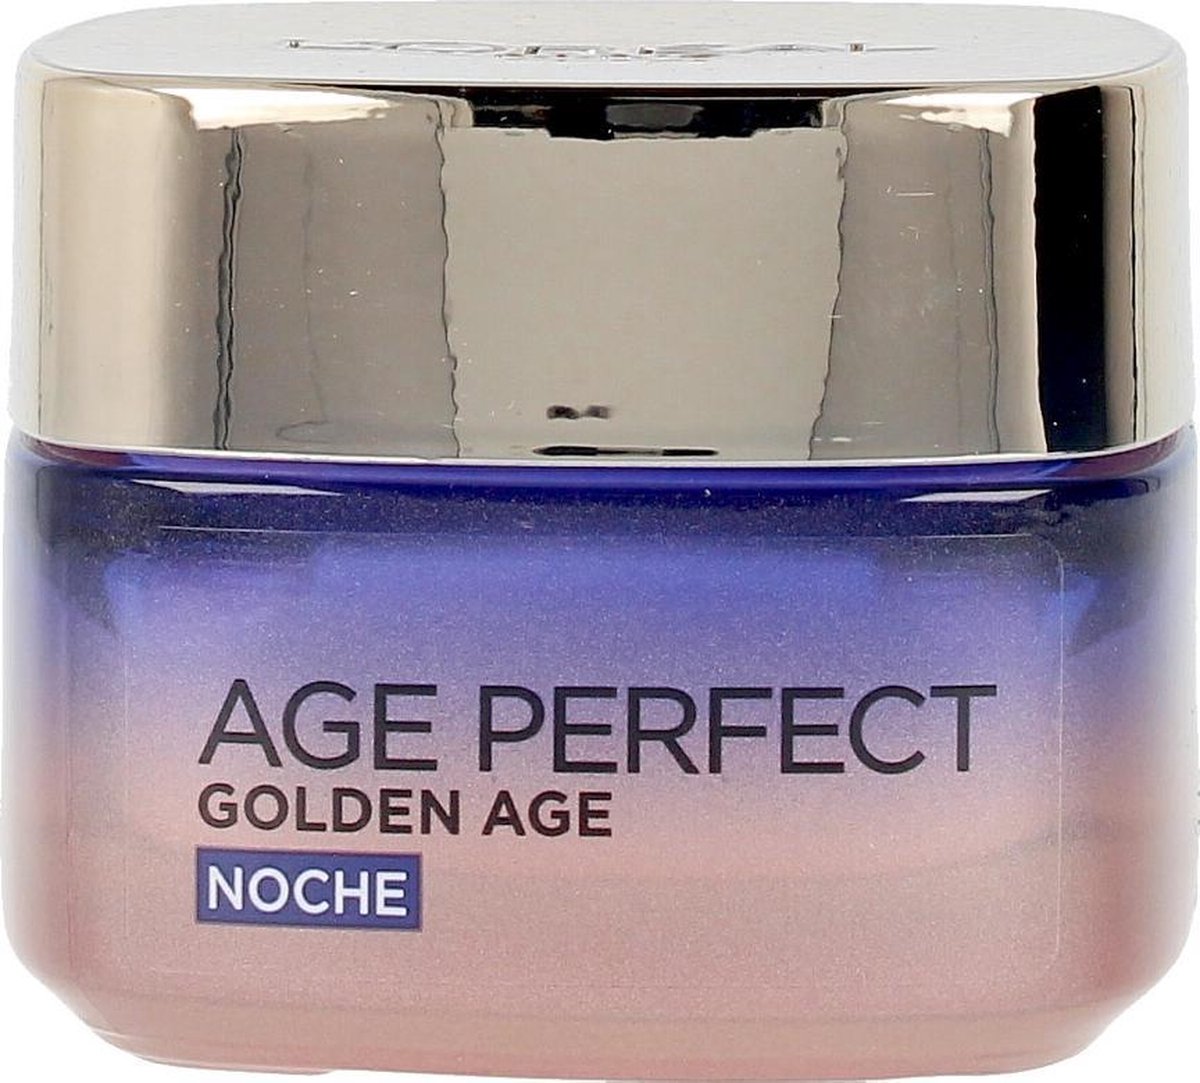 L'oreal Age Perfect Golden Age Cuidado Frio Re-estimulante Noche 50